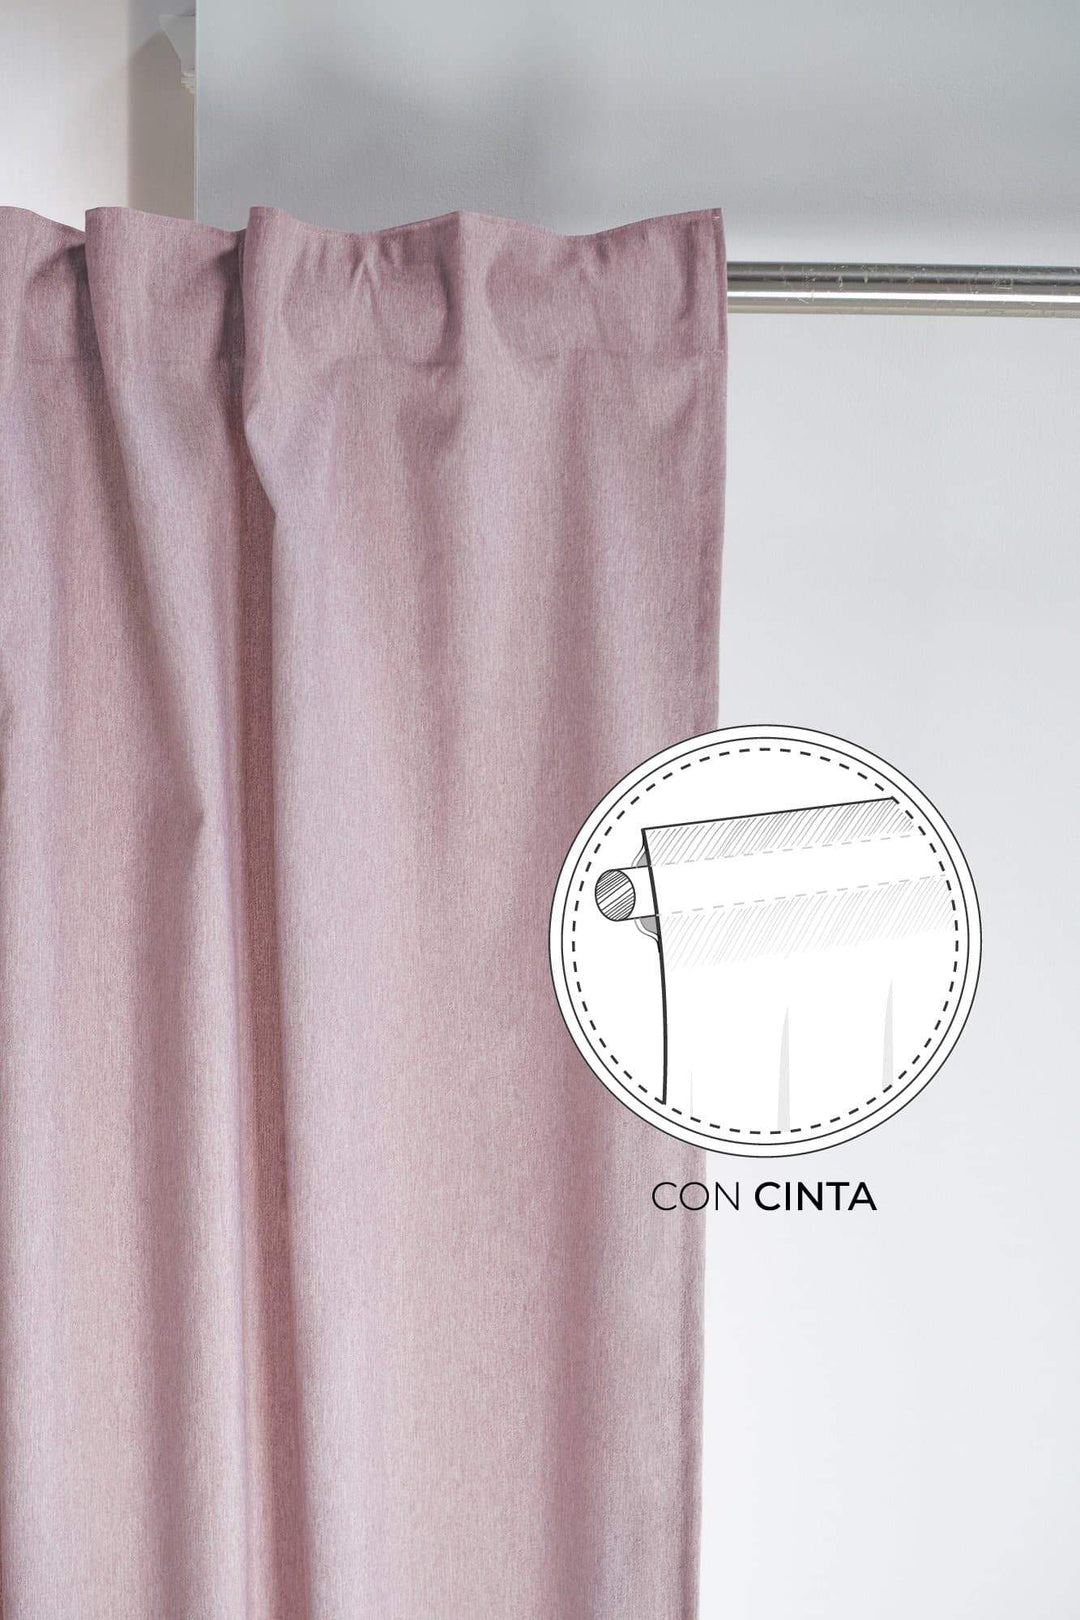 Cortina Rosa Colección Lotus - sokios-CORTINA200618S3875